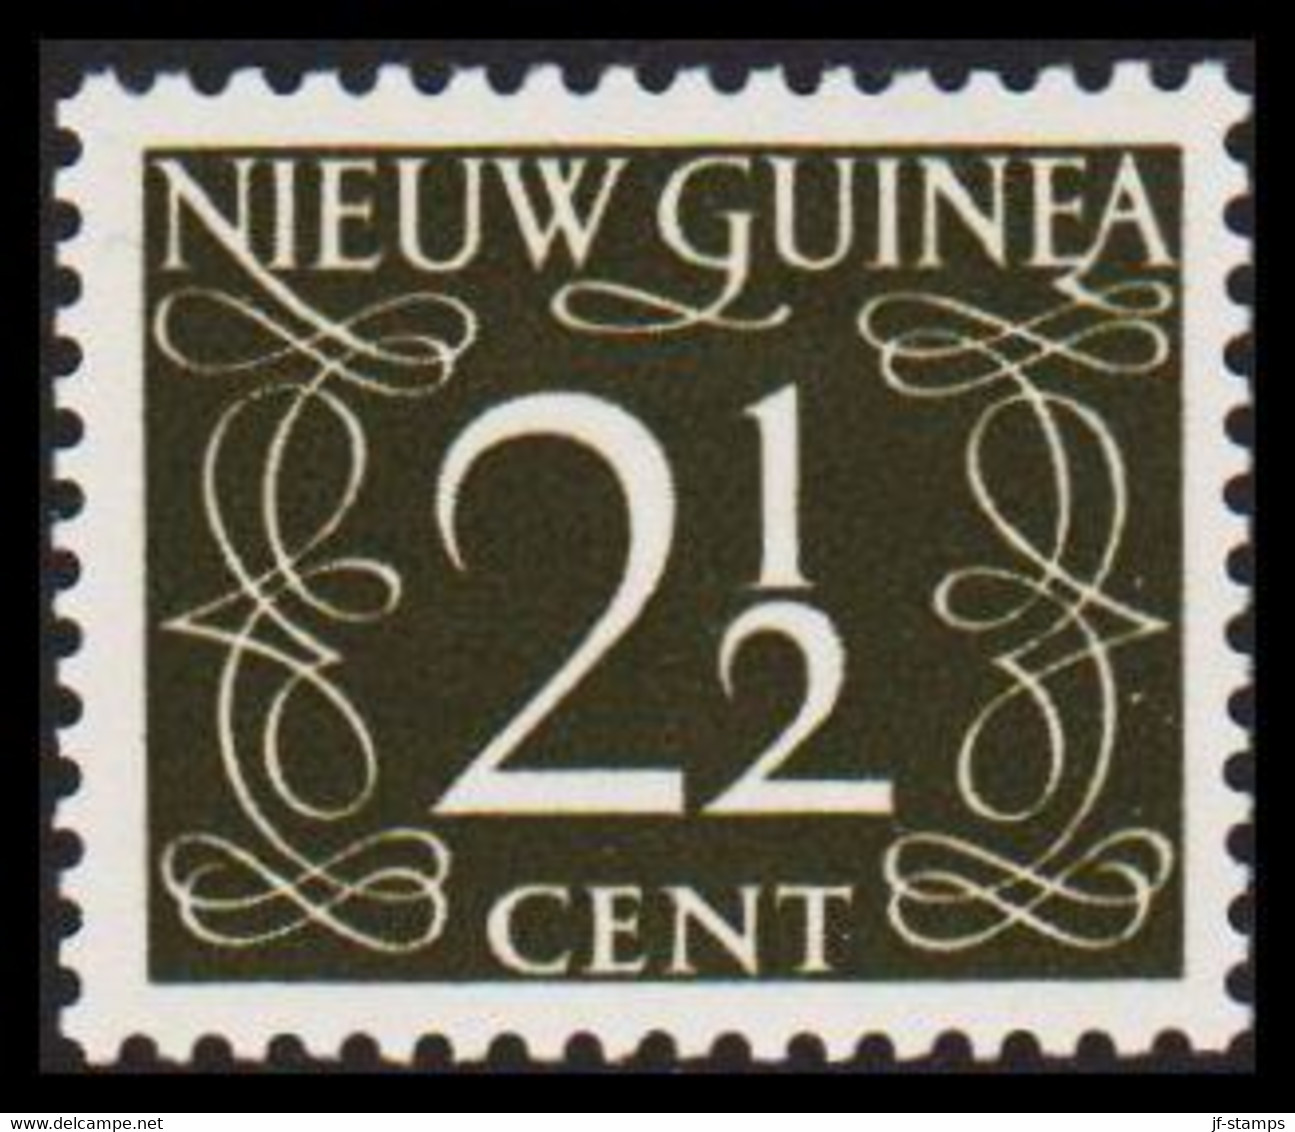 1950. NIEUW GUINEA. Nummerals- Type 2½ CENT Hinged.  - JF529320 - Nederlands Nieuw-Guinea